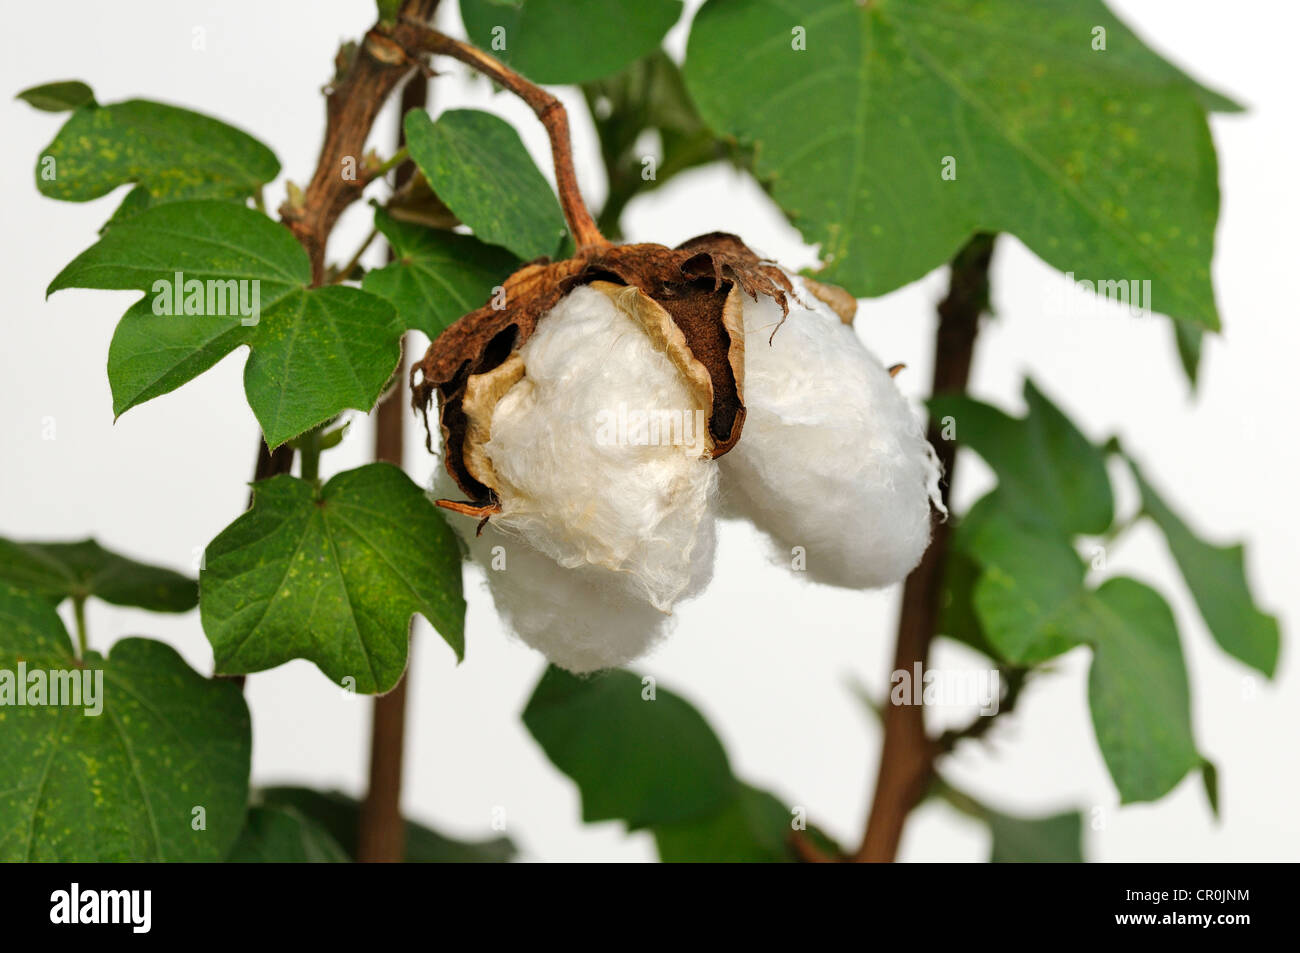 Ripe fruit capsules of the cotton plant (Gossypium herbaceum) Stock Photo